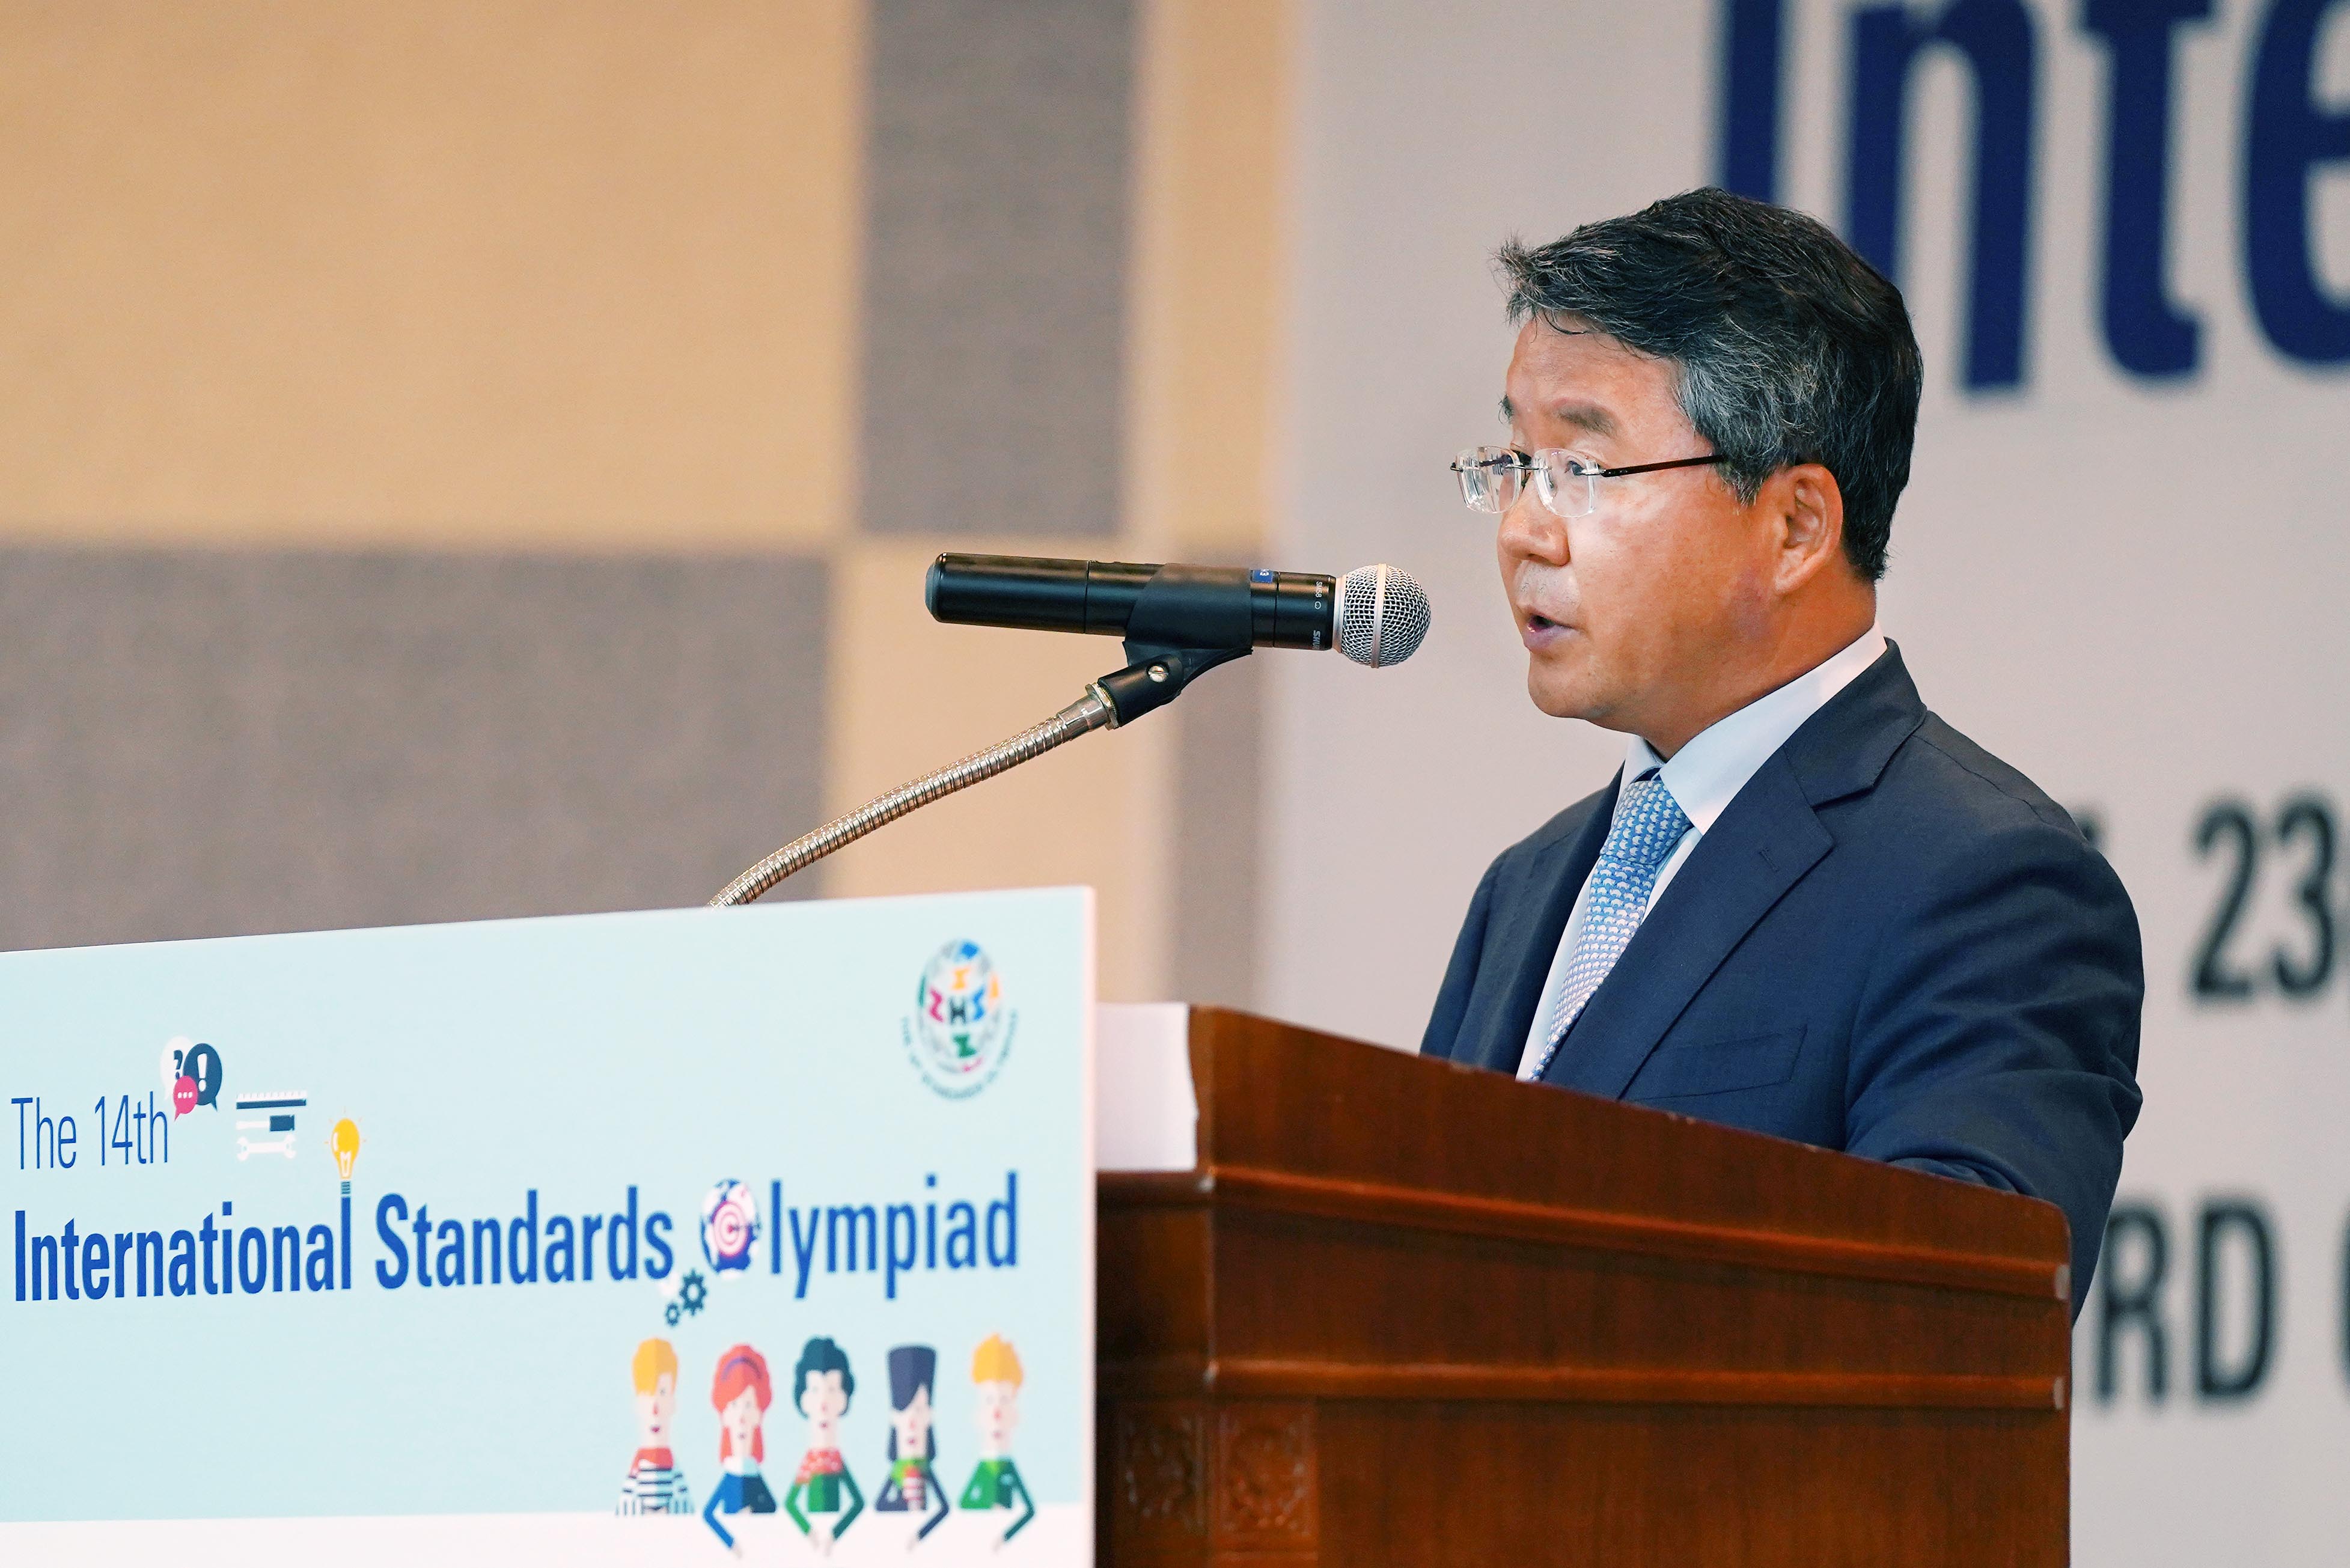 제14회 국제표준 올림피아드 대회 개최